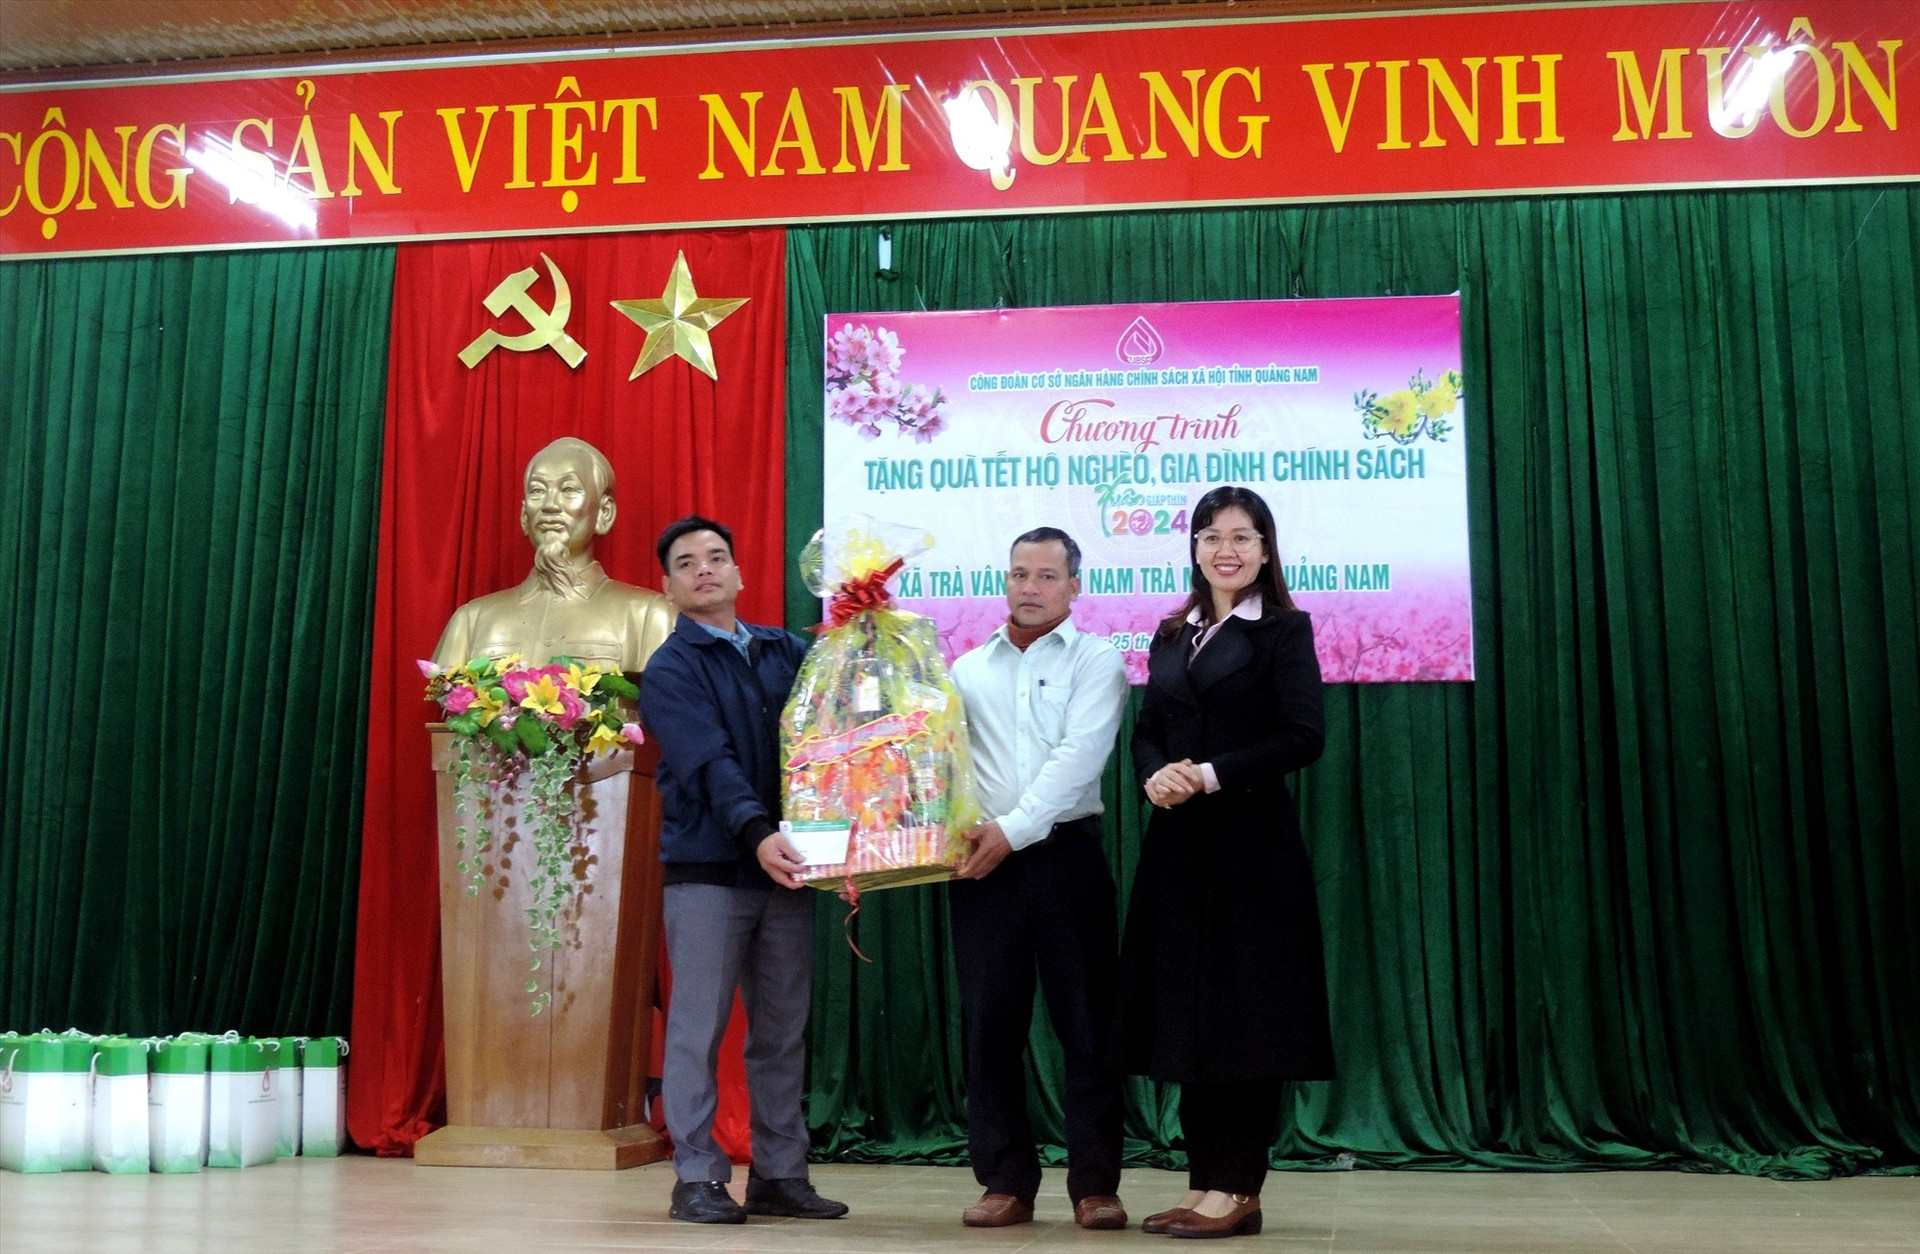 Bà Lê Thị Kim Anh tặng quà tết cho người dân xã Trà Vân. Ảnh: Q.VIỆT